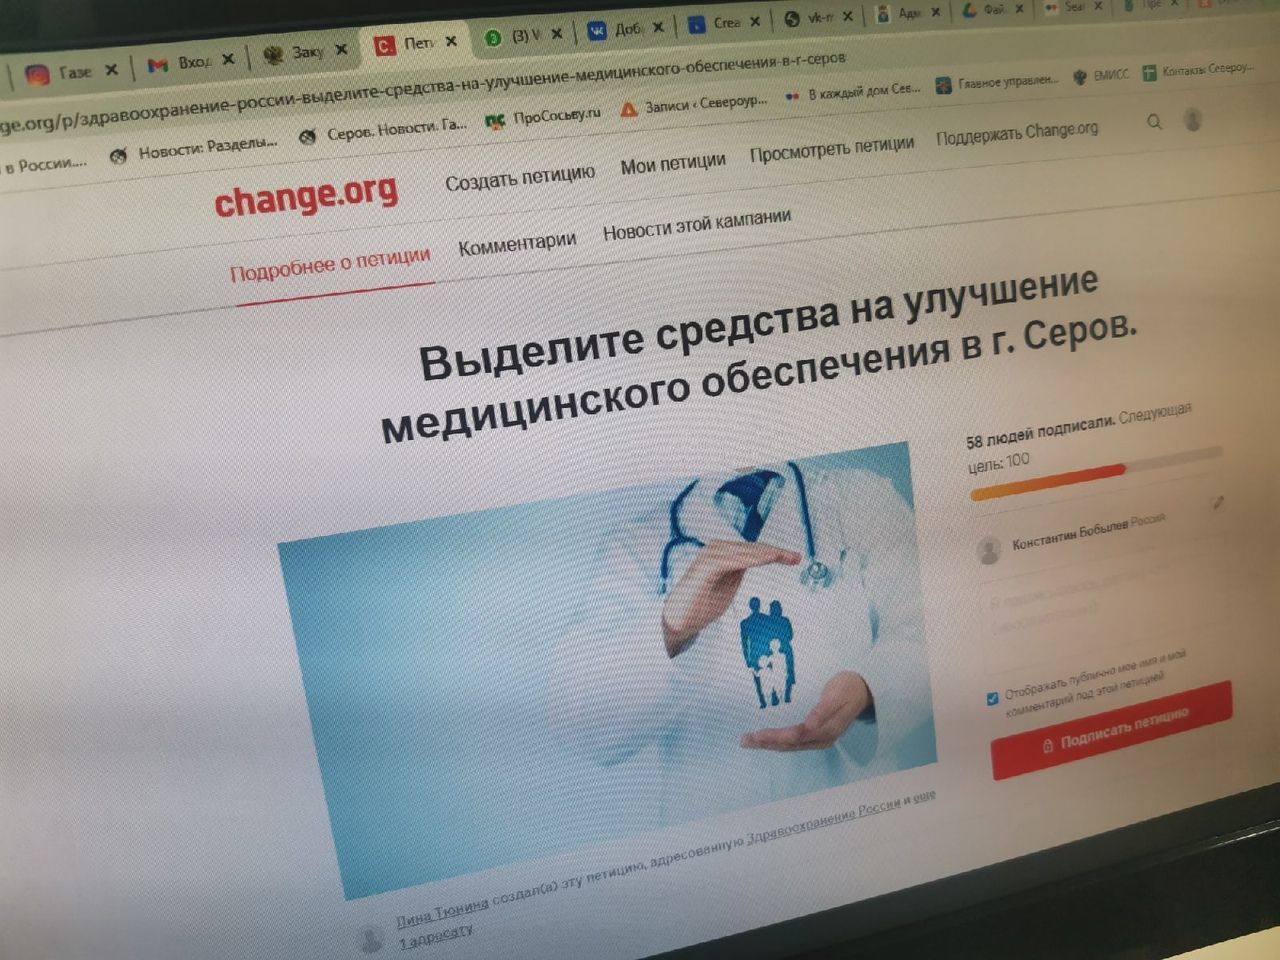 Опубликована петиция, авторы которой хотят, чтобы власти дали денег «на улучшение медицинского обеспечения» в Серове?